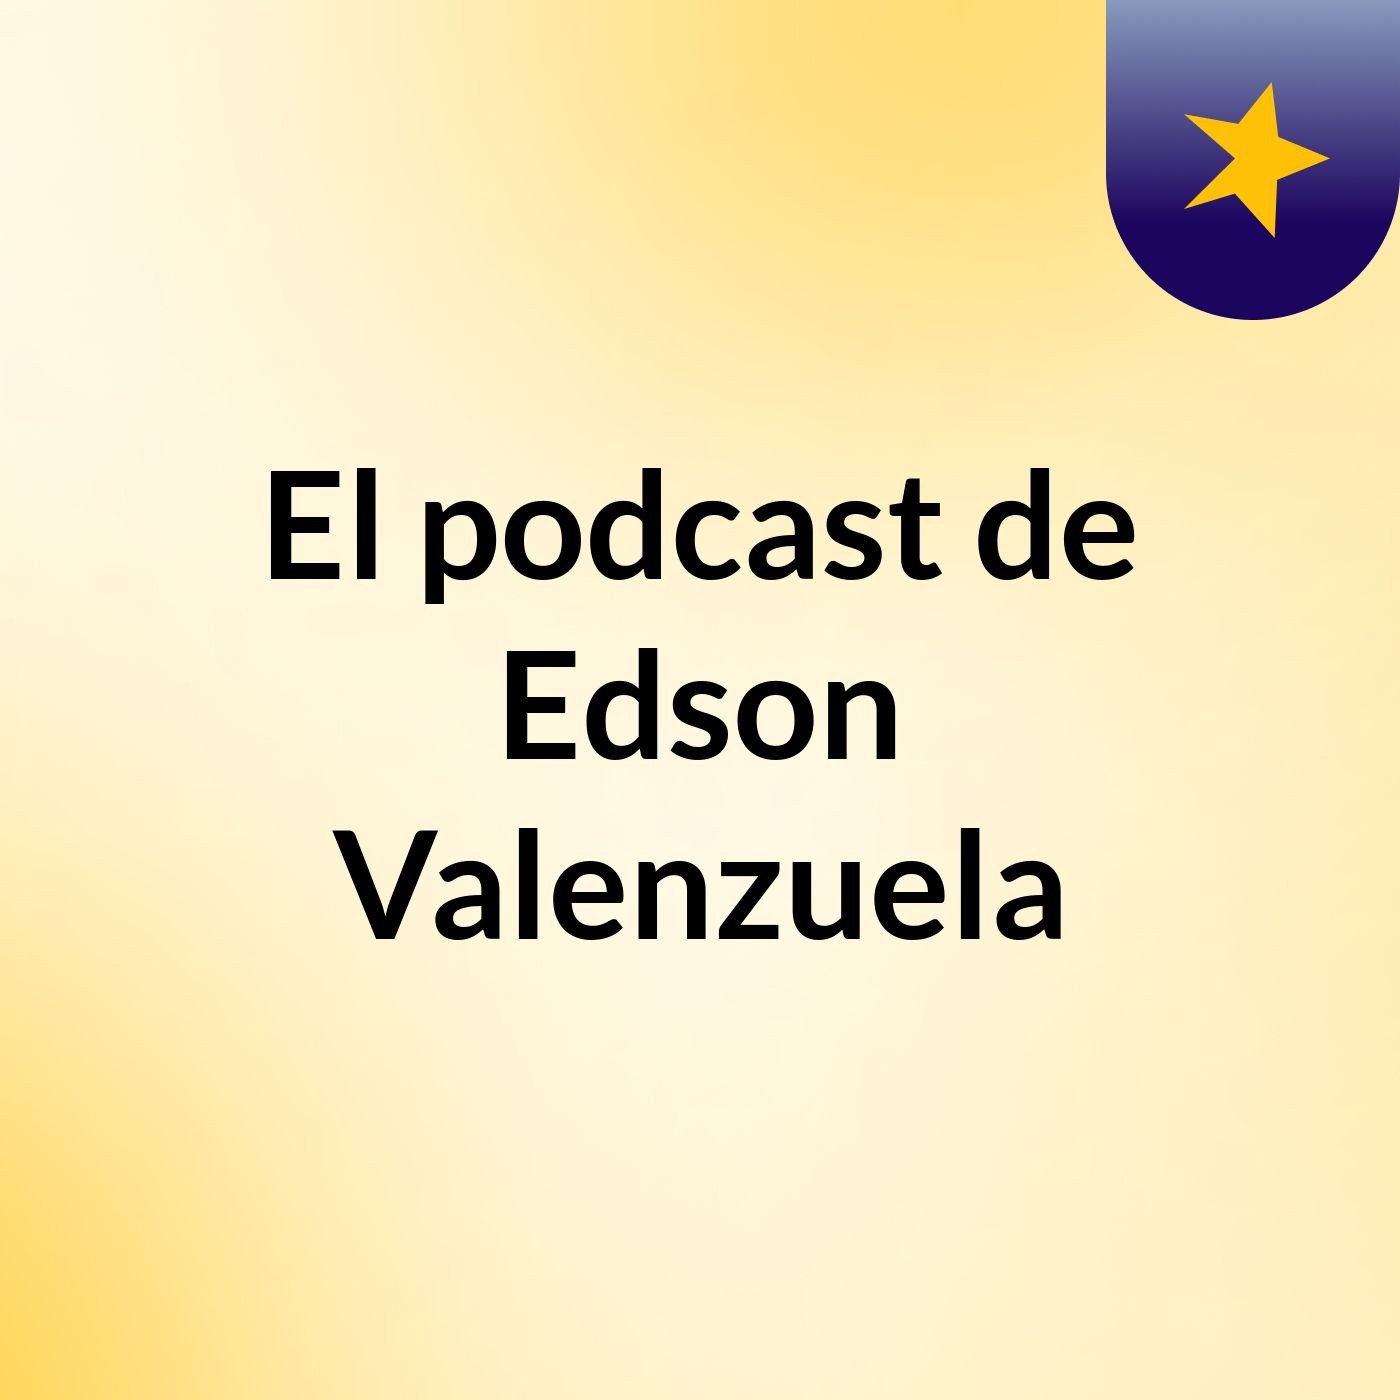 El podcast de Edson Valenzuela